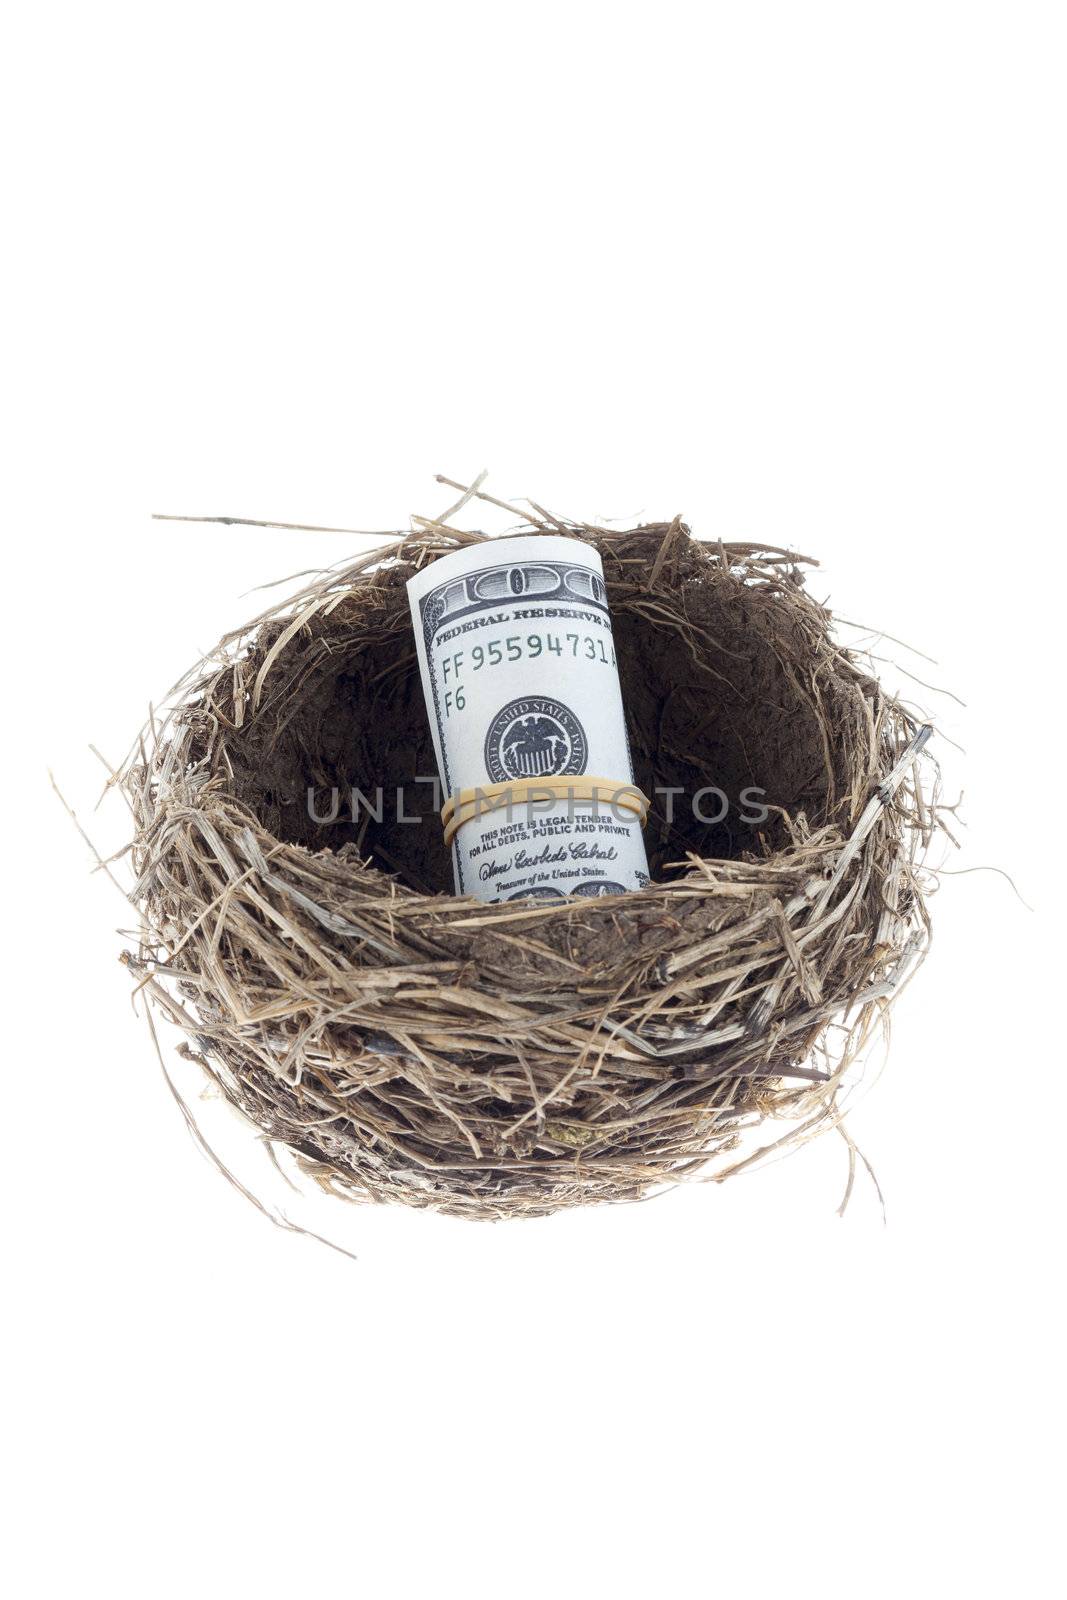 birds nest with a dollar by kozzi